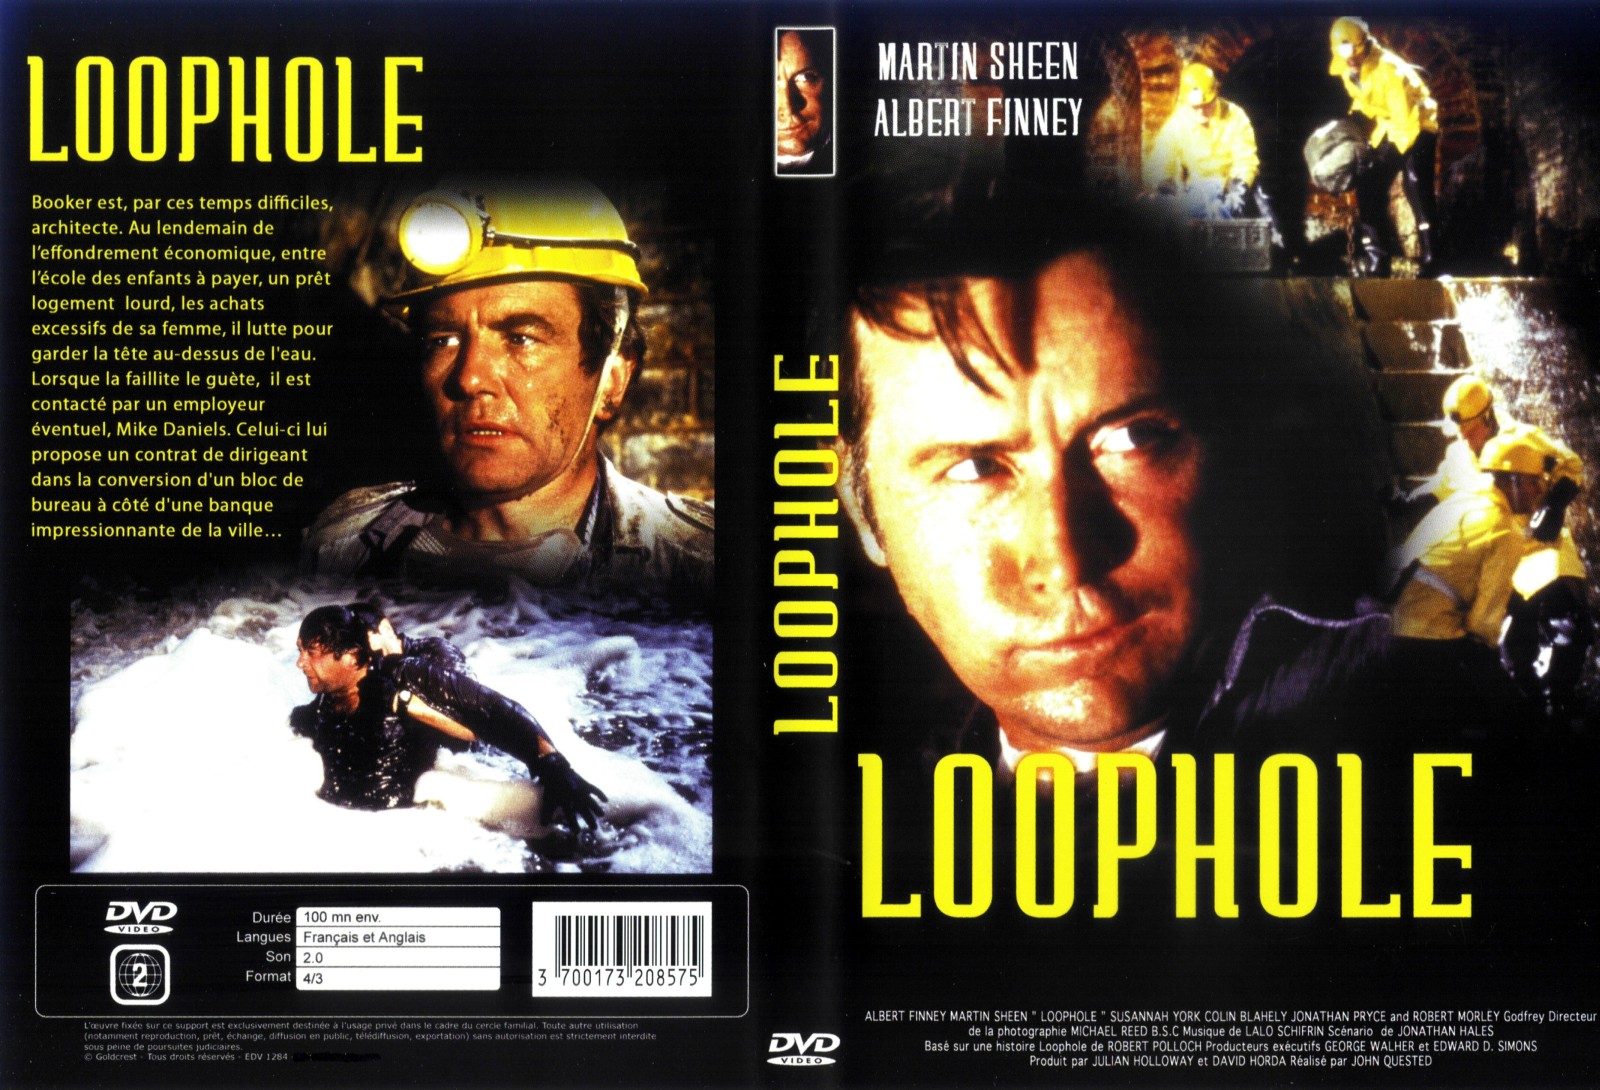 Jaquette DVD Loophole